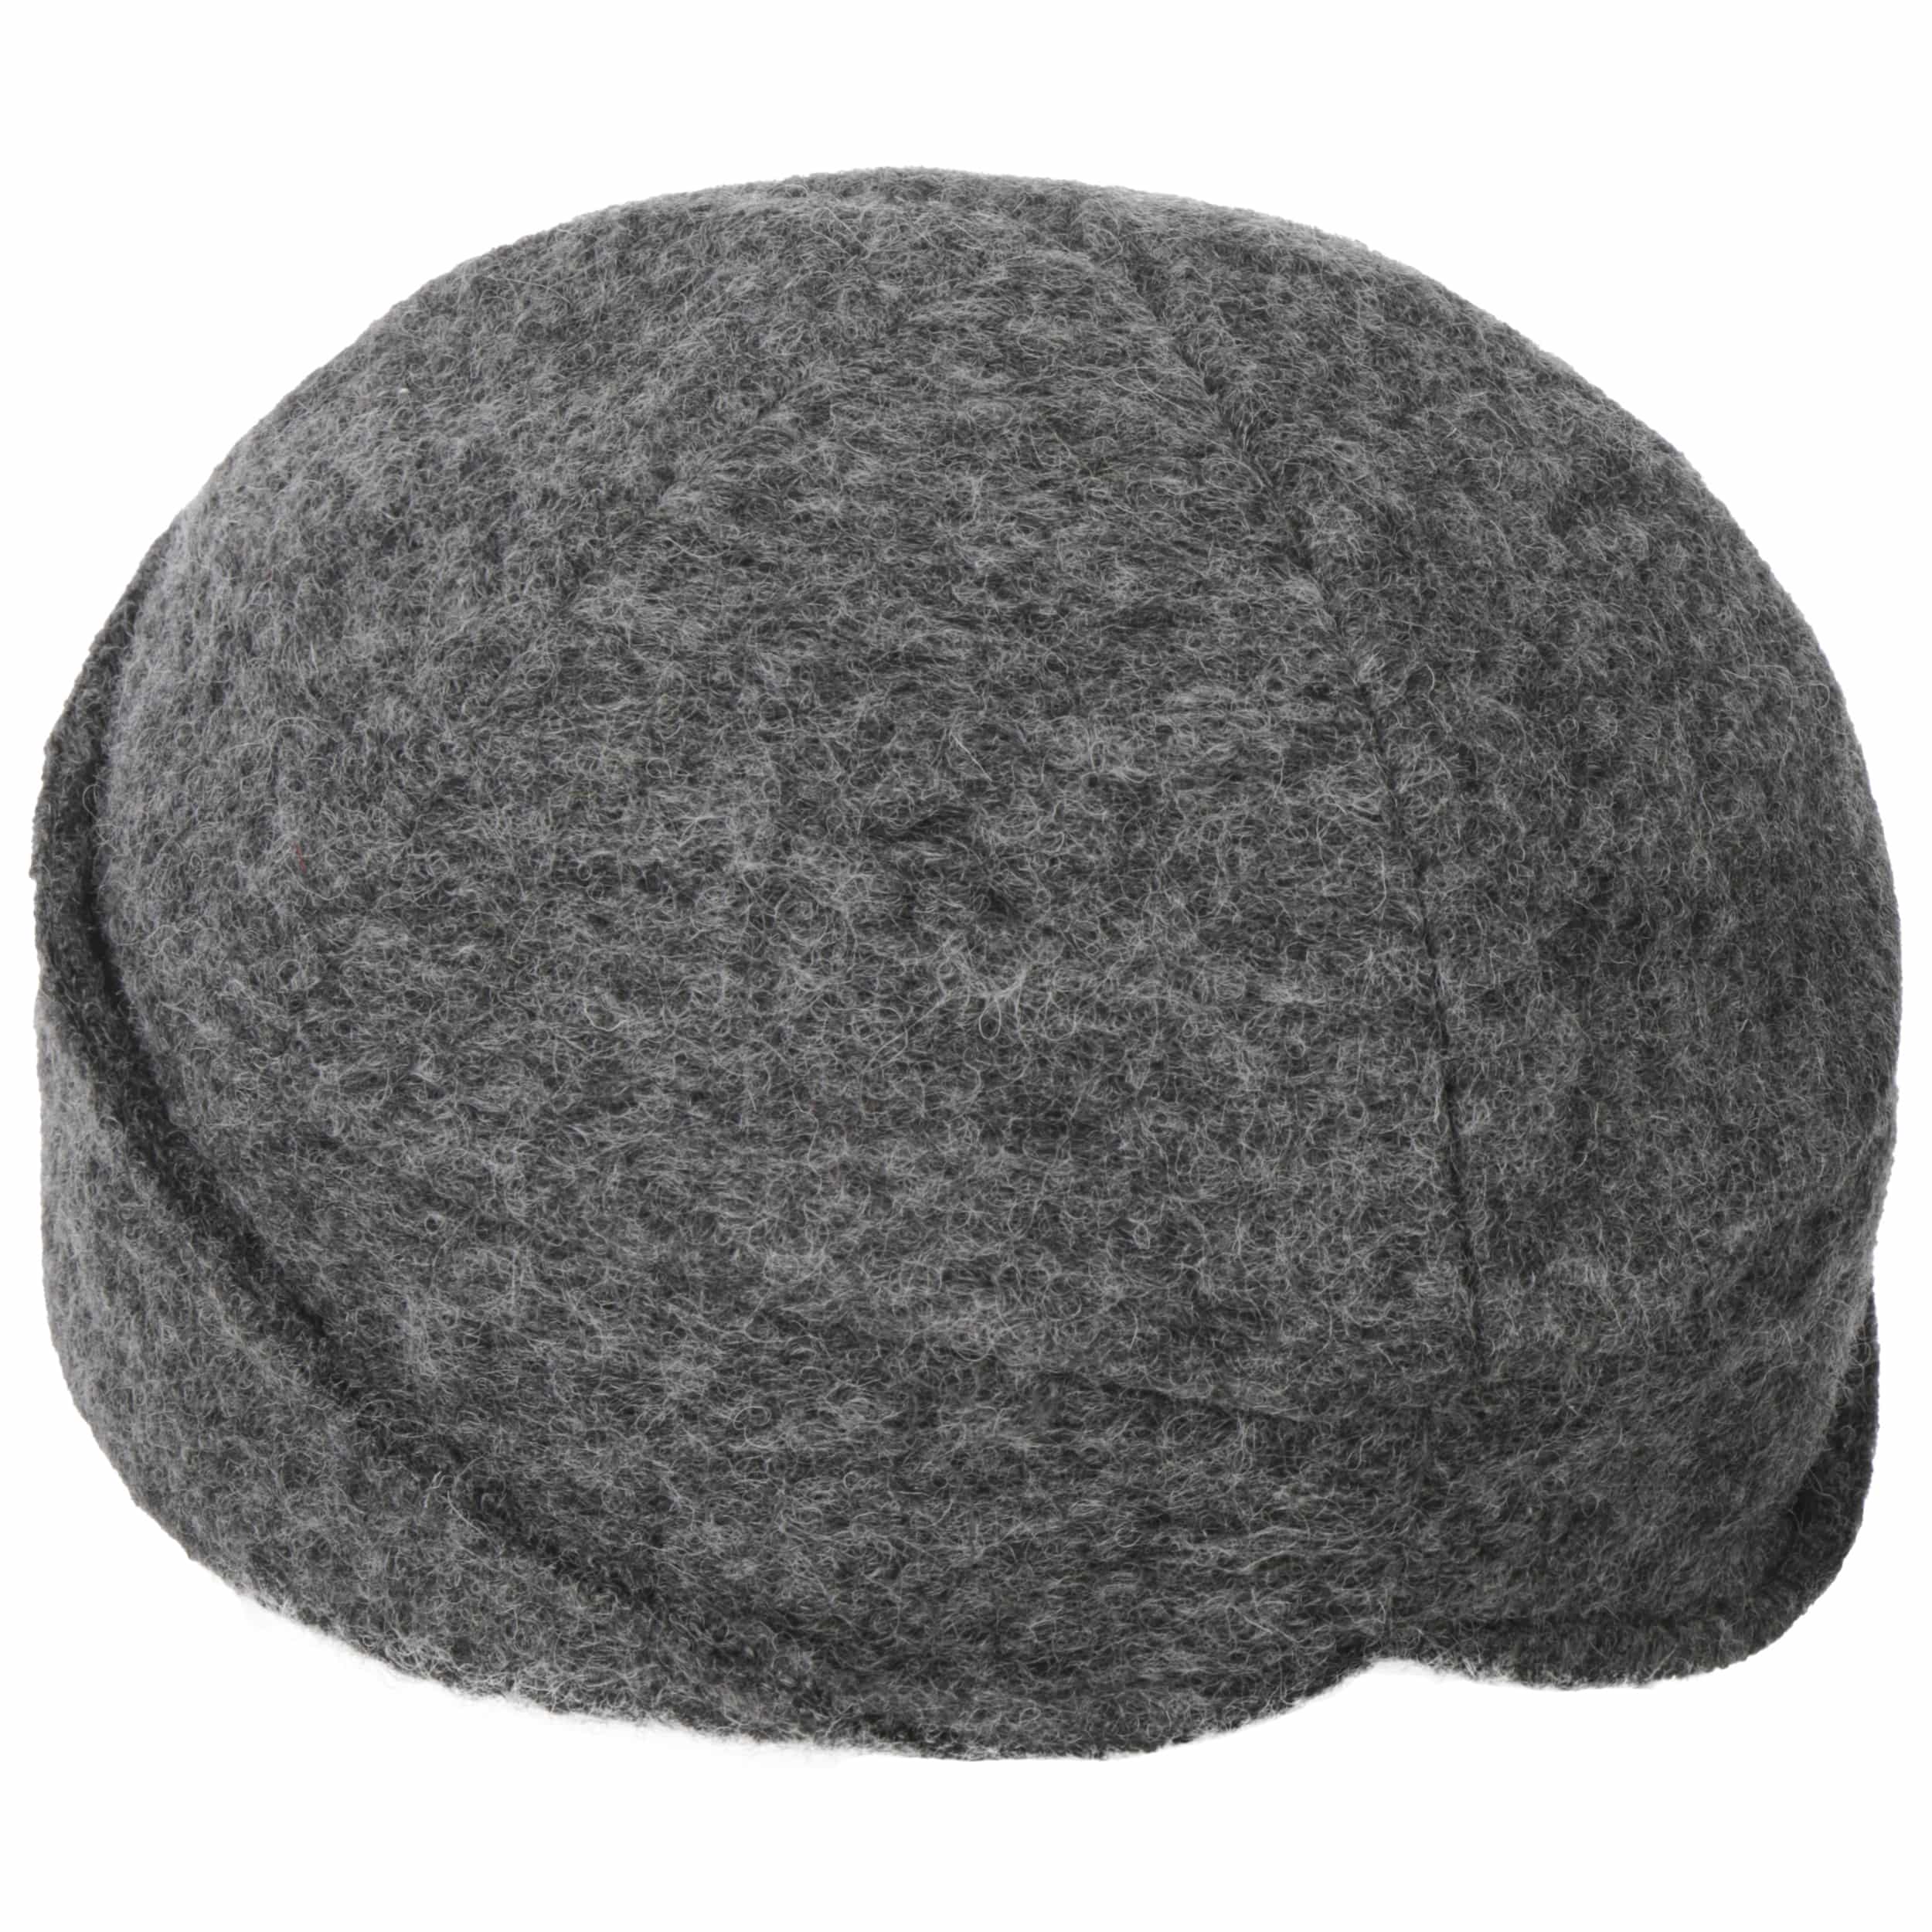 Bonnet gris Accessoires Chapeaux et casquettes Chapeaux et bonnets dhiver Bonnets 